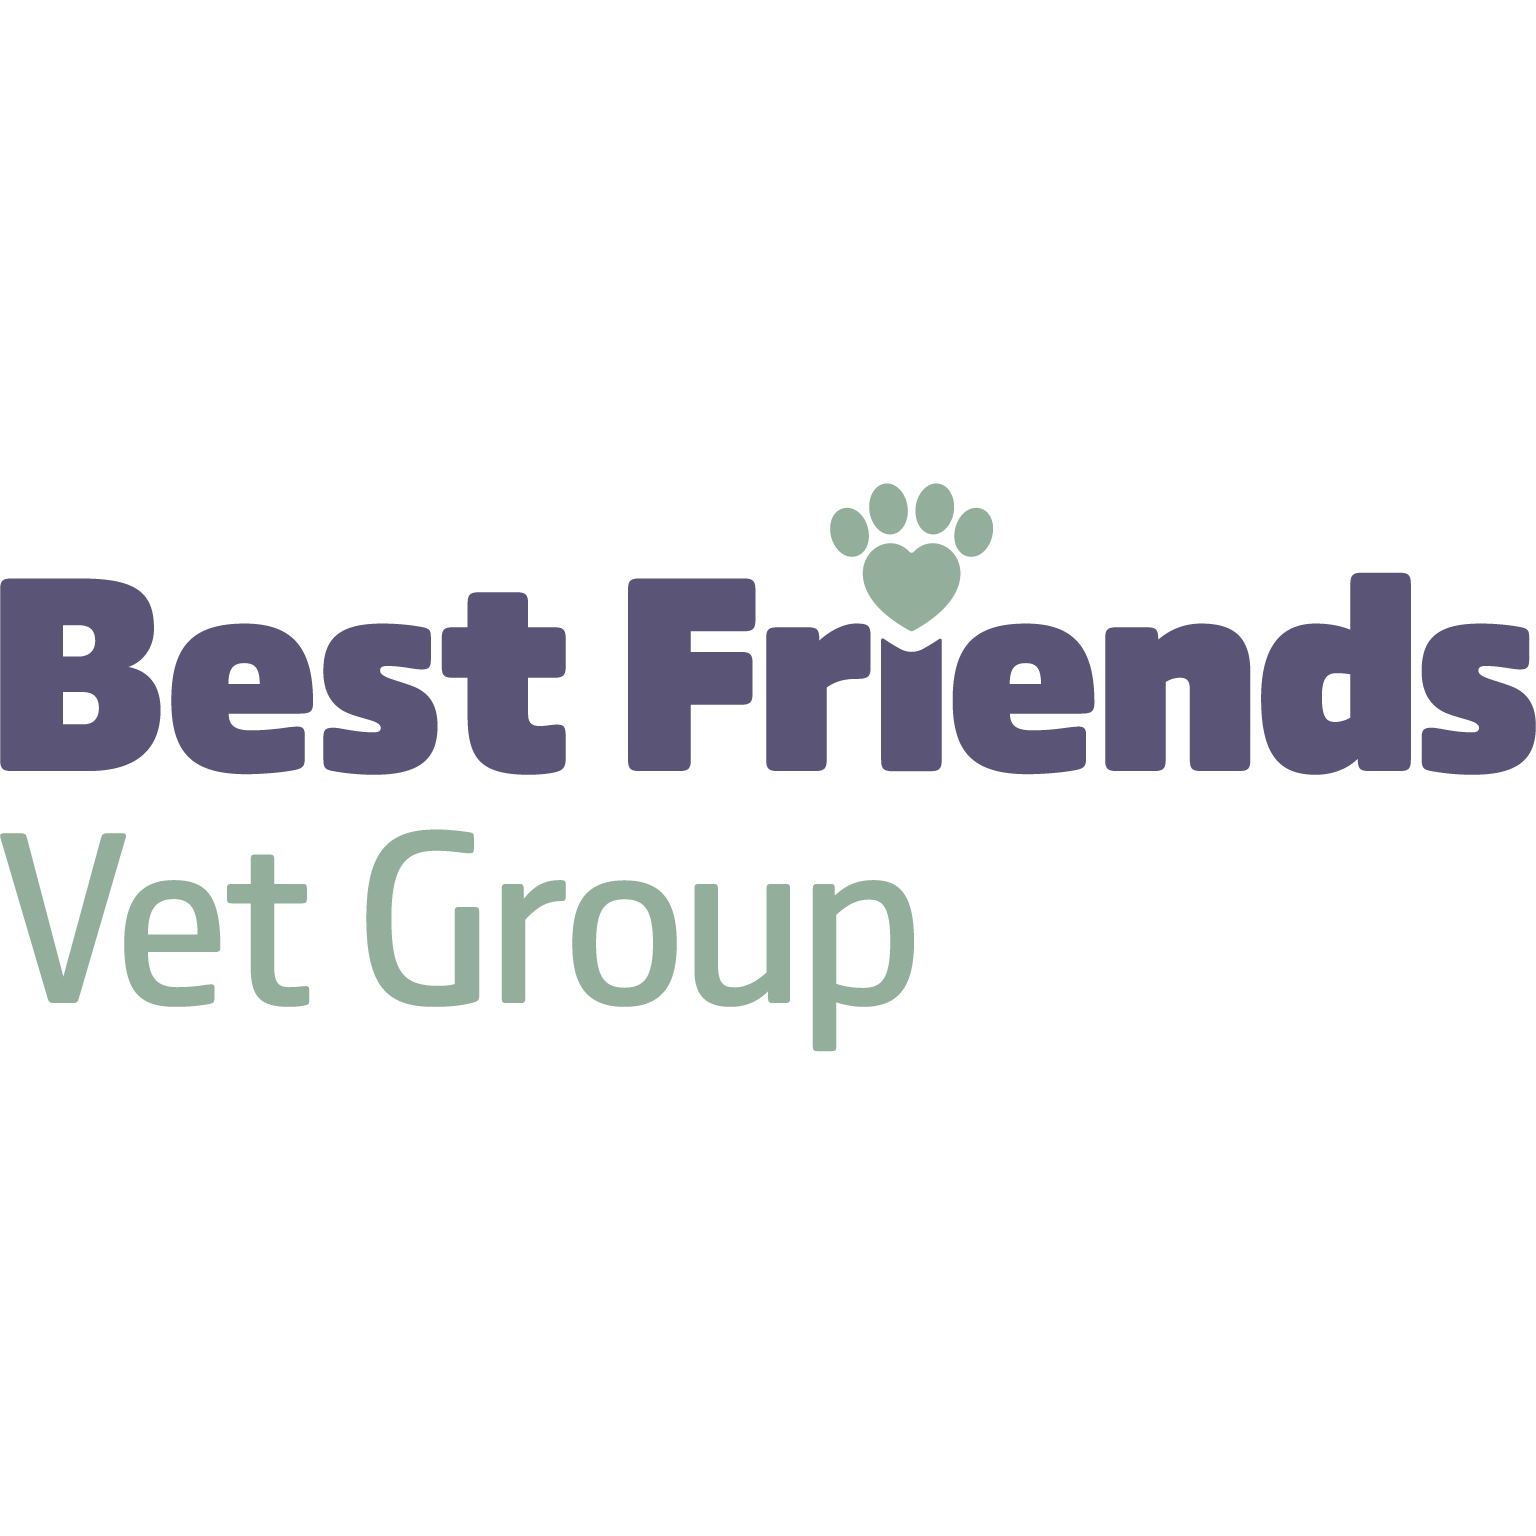 Best Friends Vet Group, Wisbech Logo